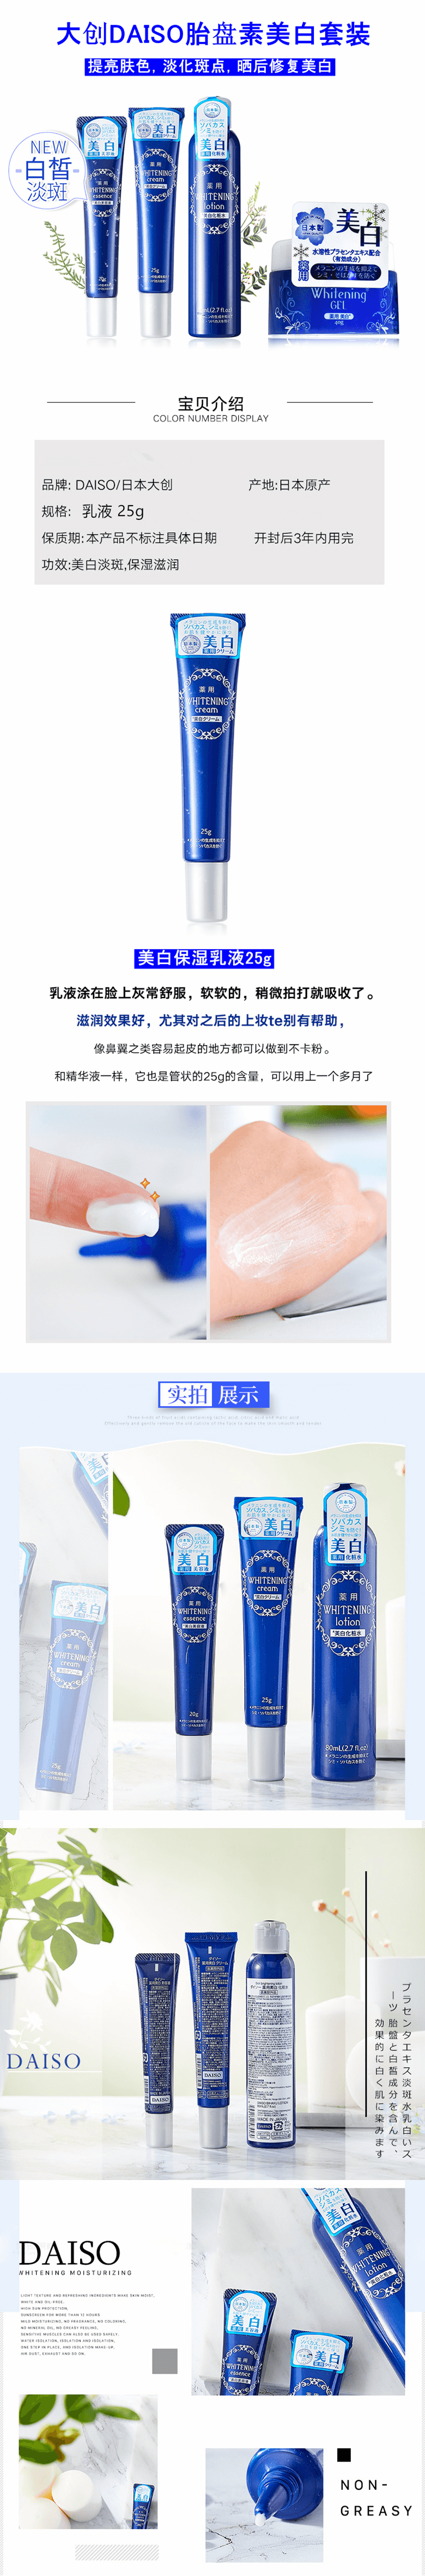 【日本直邮】 DAISO 大创 胎盘提取物美白乳液25g(已停产 )